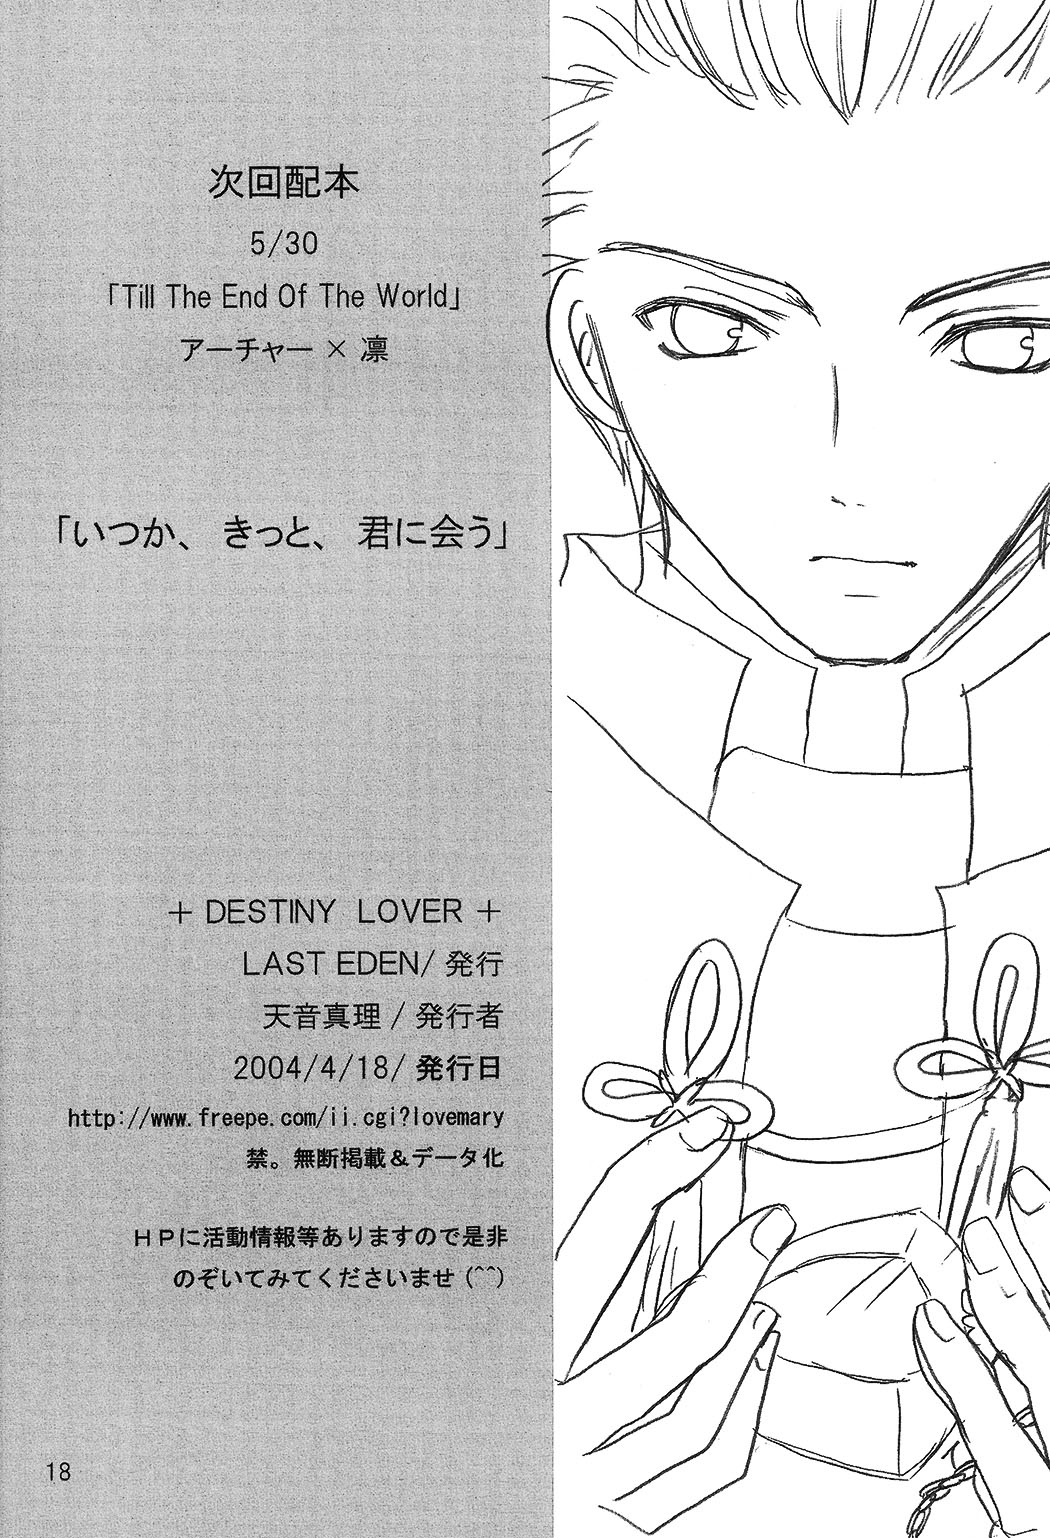 (魔術師との絆) [LAST EDEN (天音真理)] DESTINY LOVER (Fate/stay night)